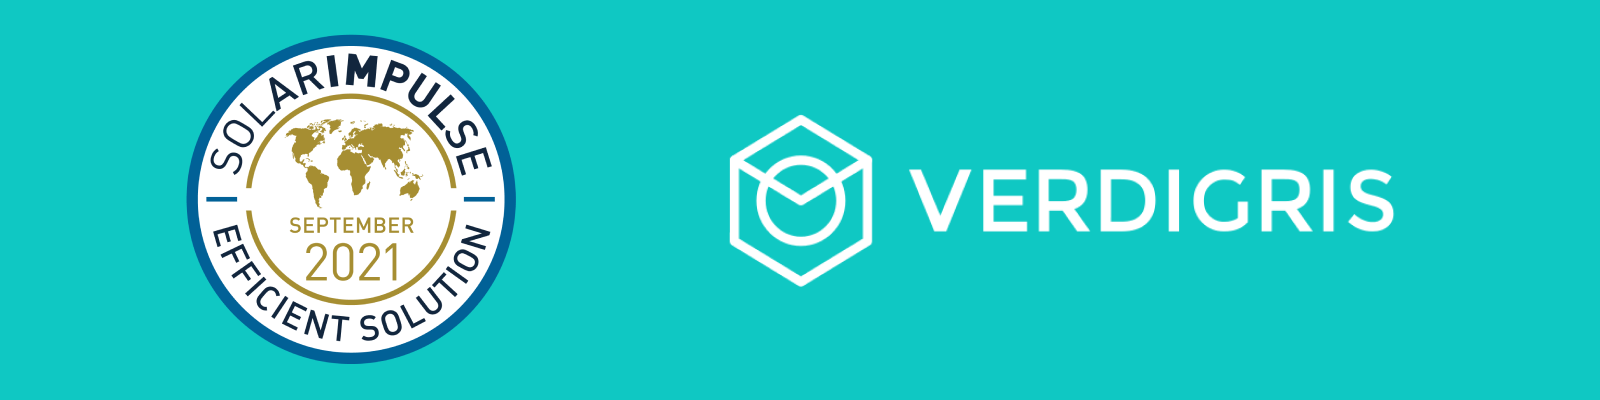 Verdigris Receives “Solar Impulse Efficient Solution” Label